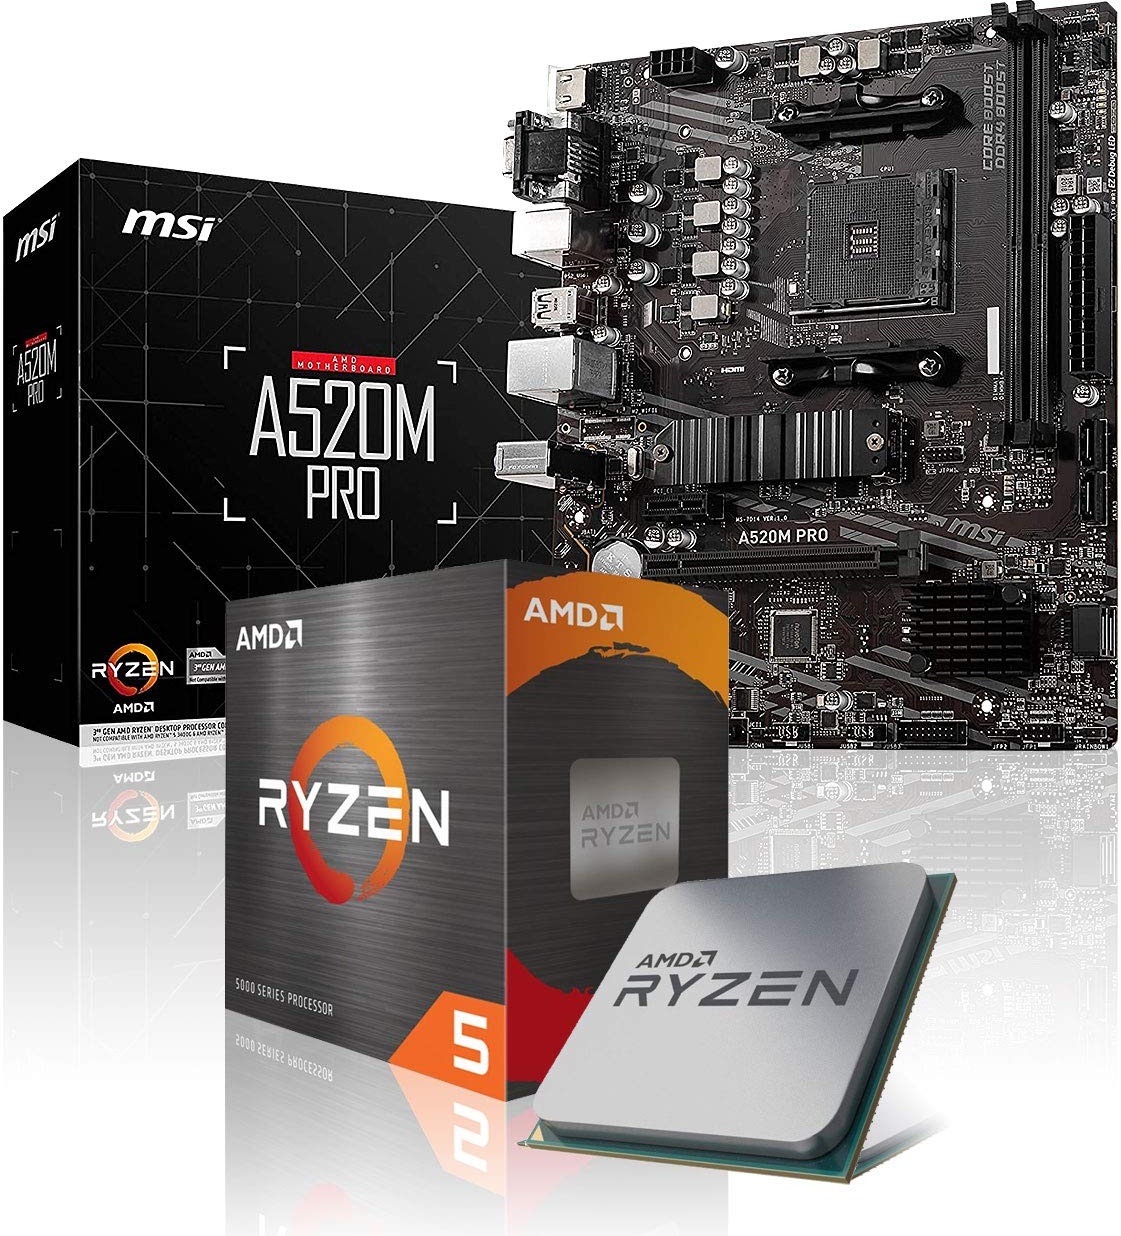 Memory PC Aufrüst-Kit Bundle AMD Ryzen 5 5500 6X 3.6 GHz, A520M-A Pro, komplett fertig montiert inkl. Bios Update und getestet